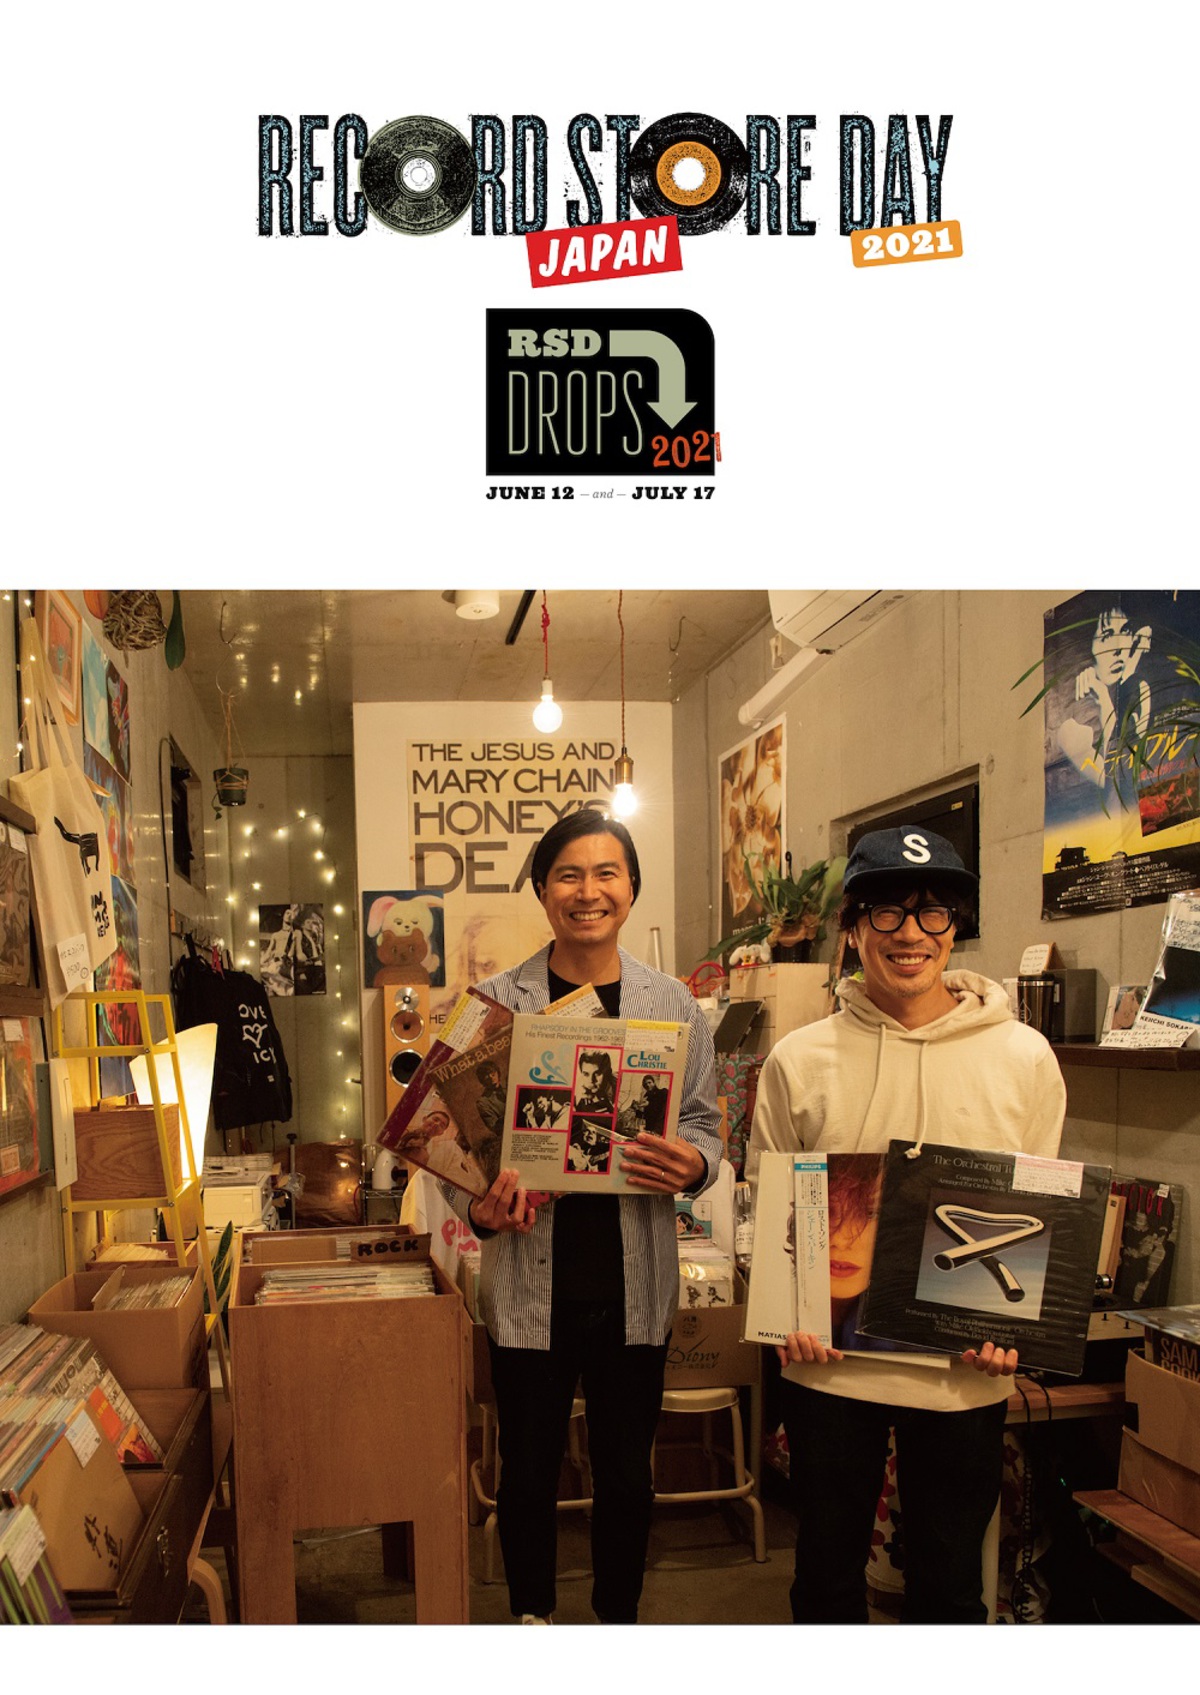 くるり Record Store Day Japan 21 アンバサダー就任 天才の愛 Thaw Lp盤6 12発売決定